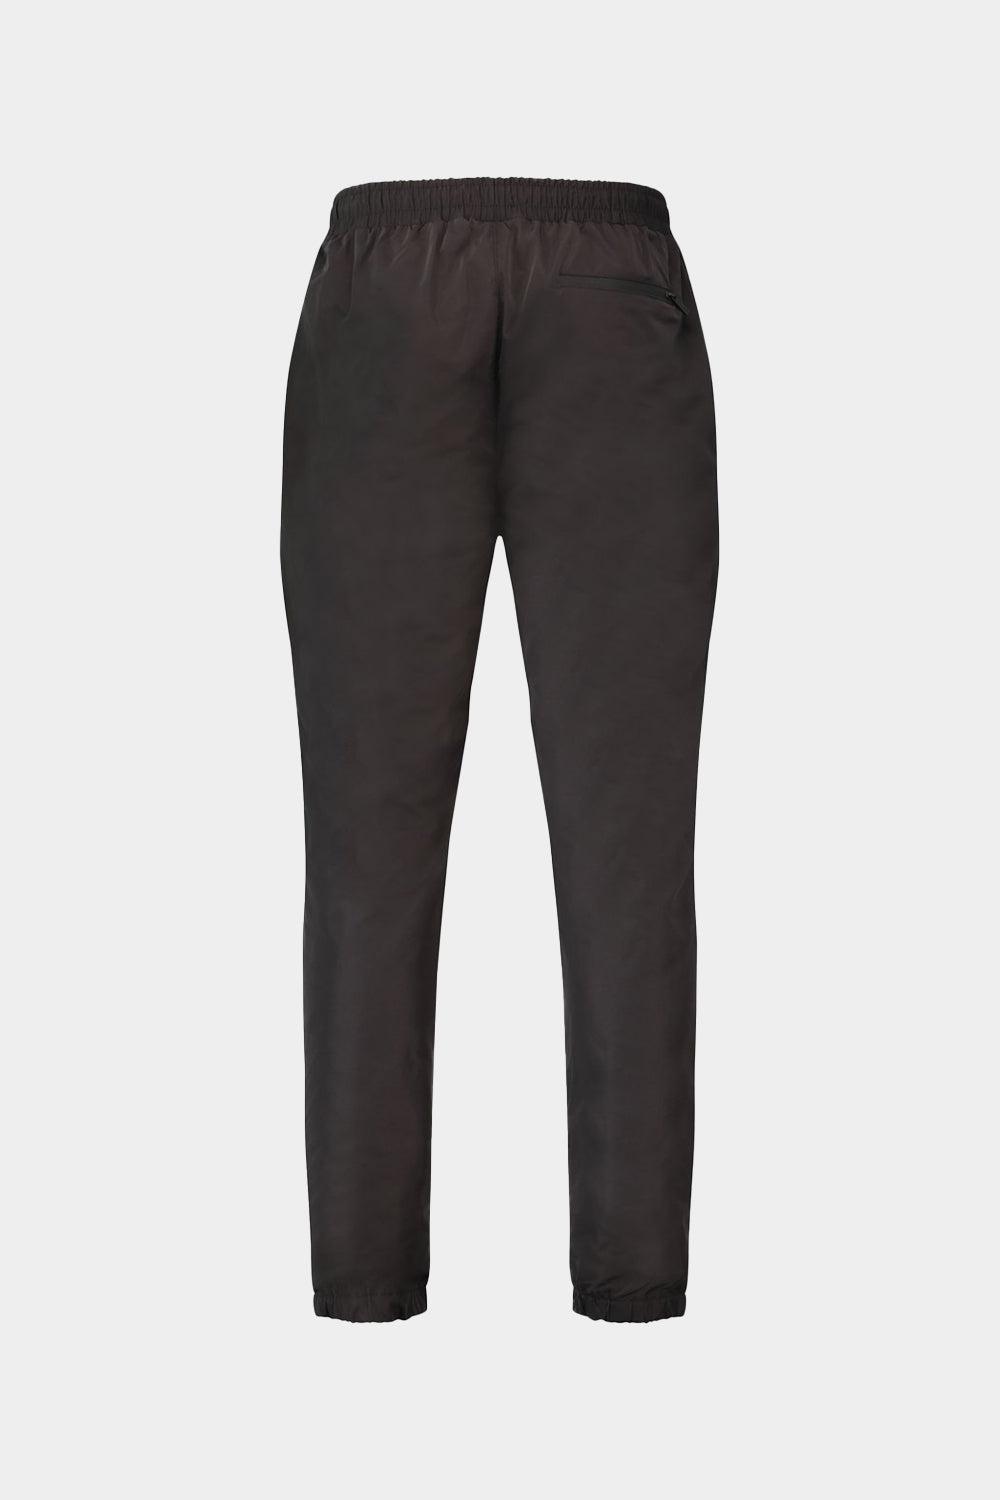 מכנסי טרנינג לגברים בד ניילון KARL LAGERFELD Vendome online | ונדום .